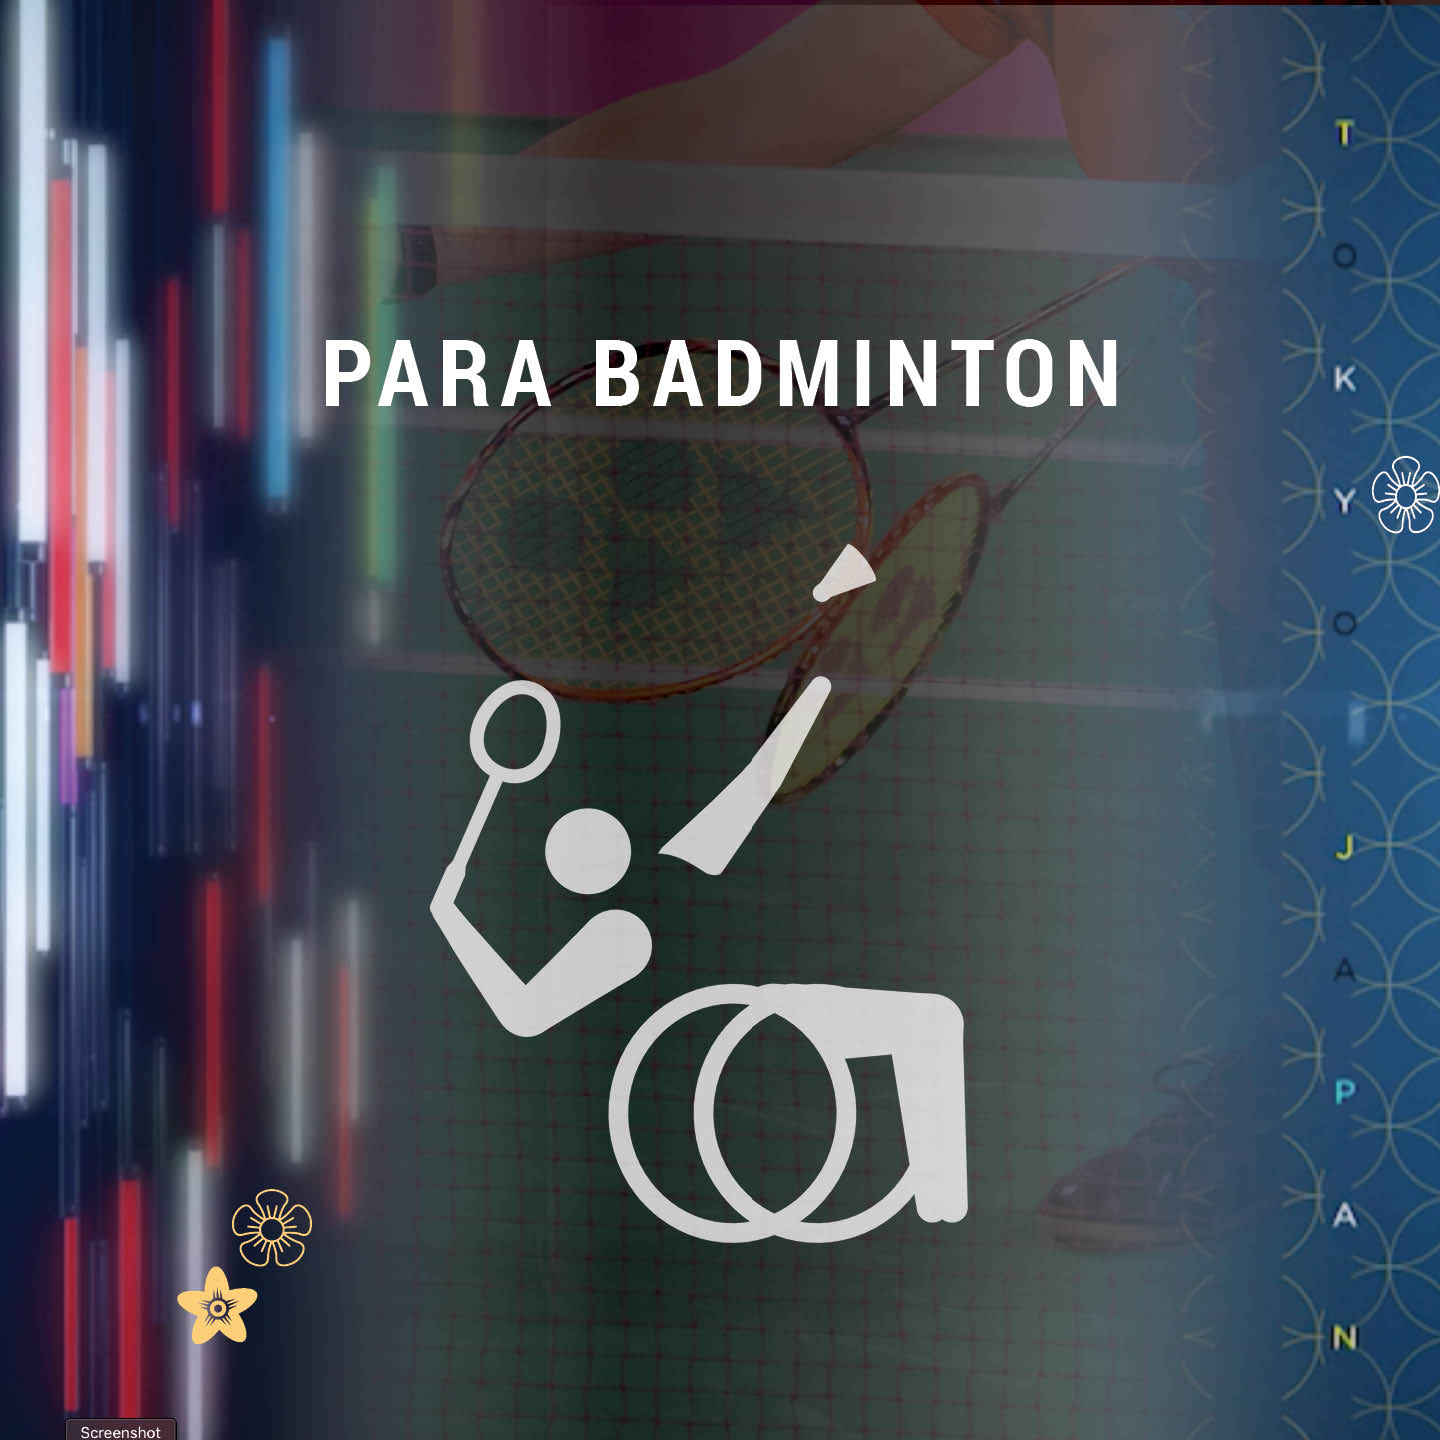 Para badminton